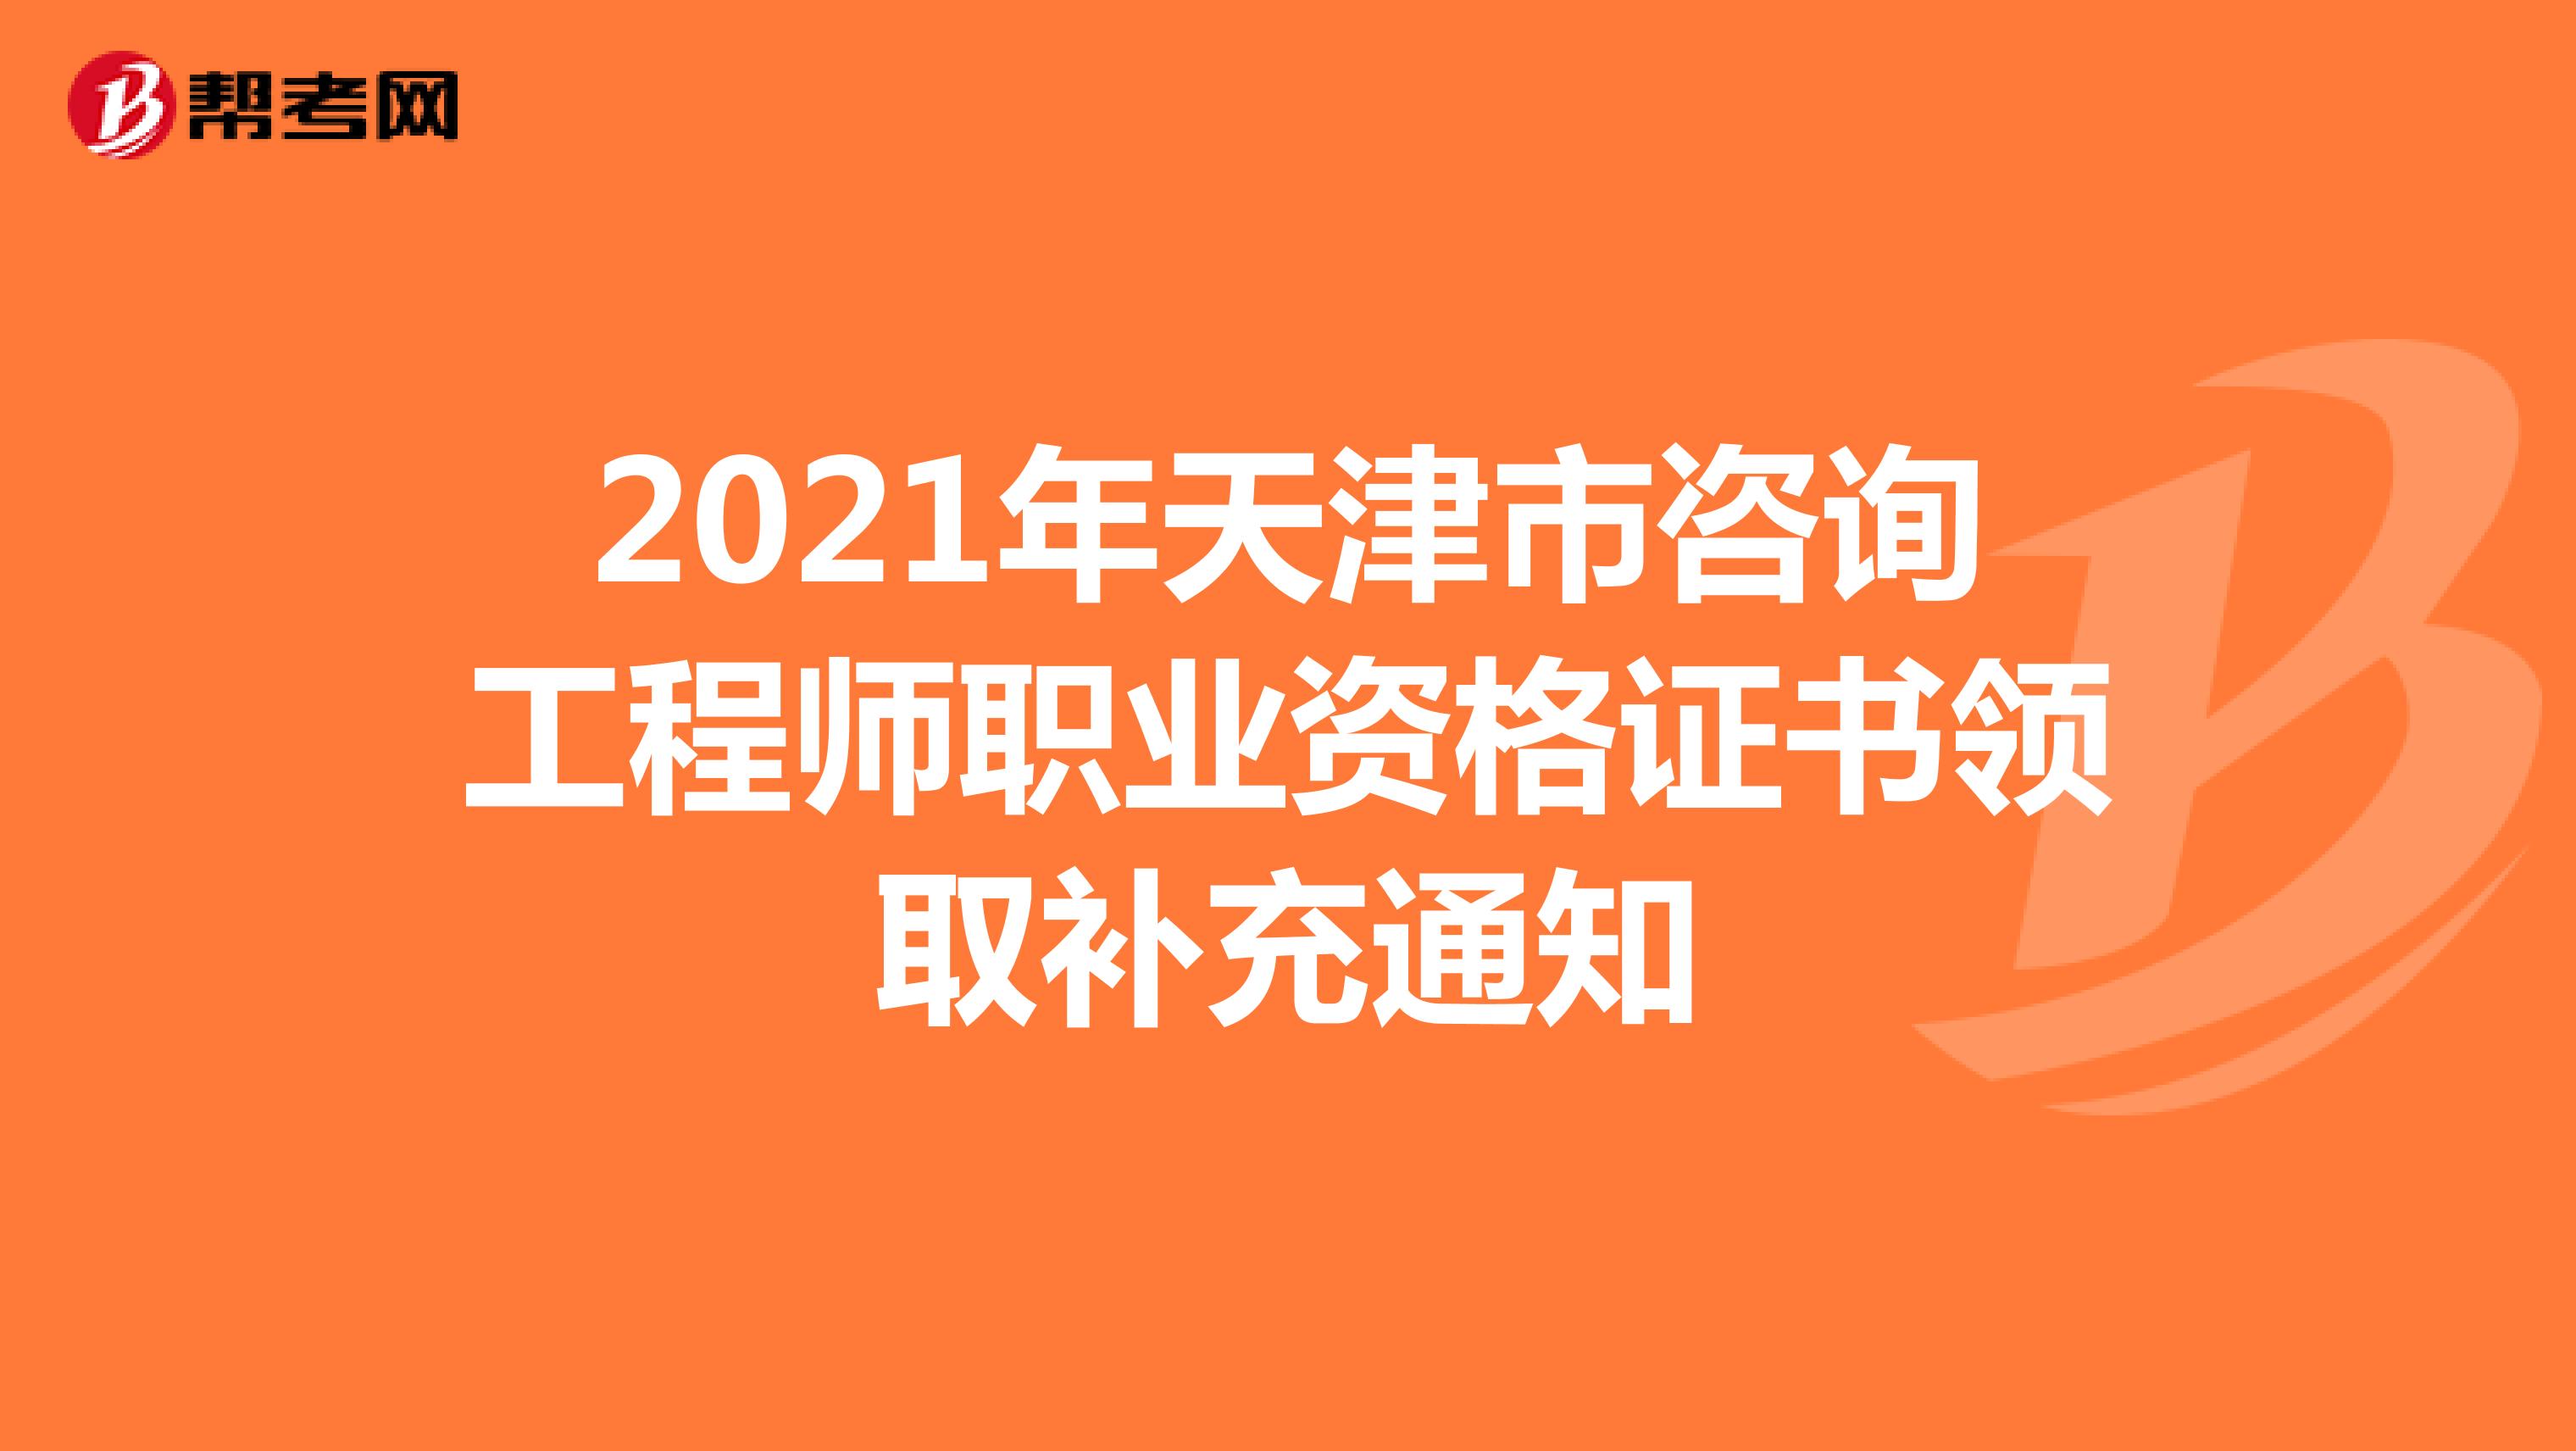 2021年天津市咨询工程师职业资格证书领取补充通知